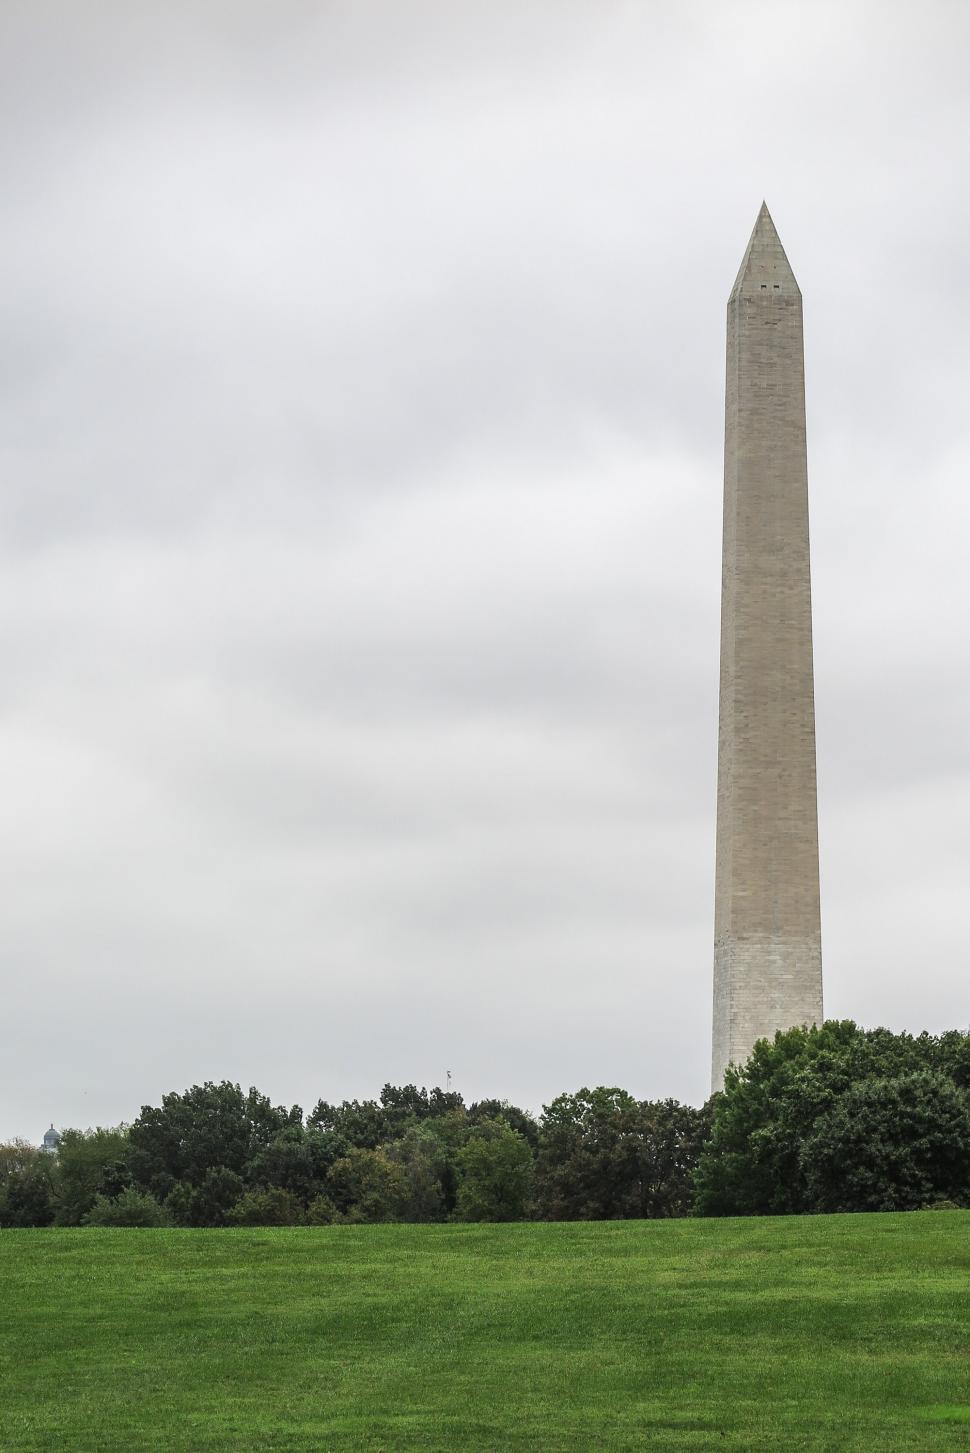 Free Image of Obelisk of the Washington Monument 